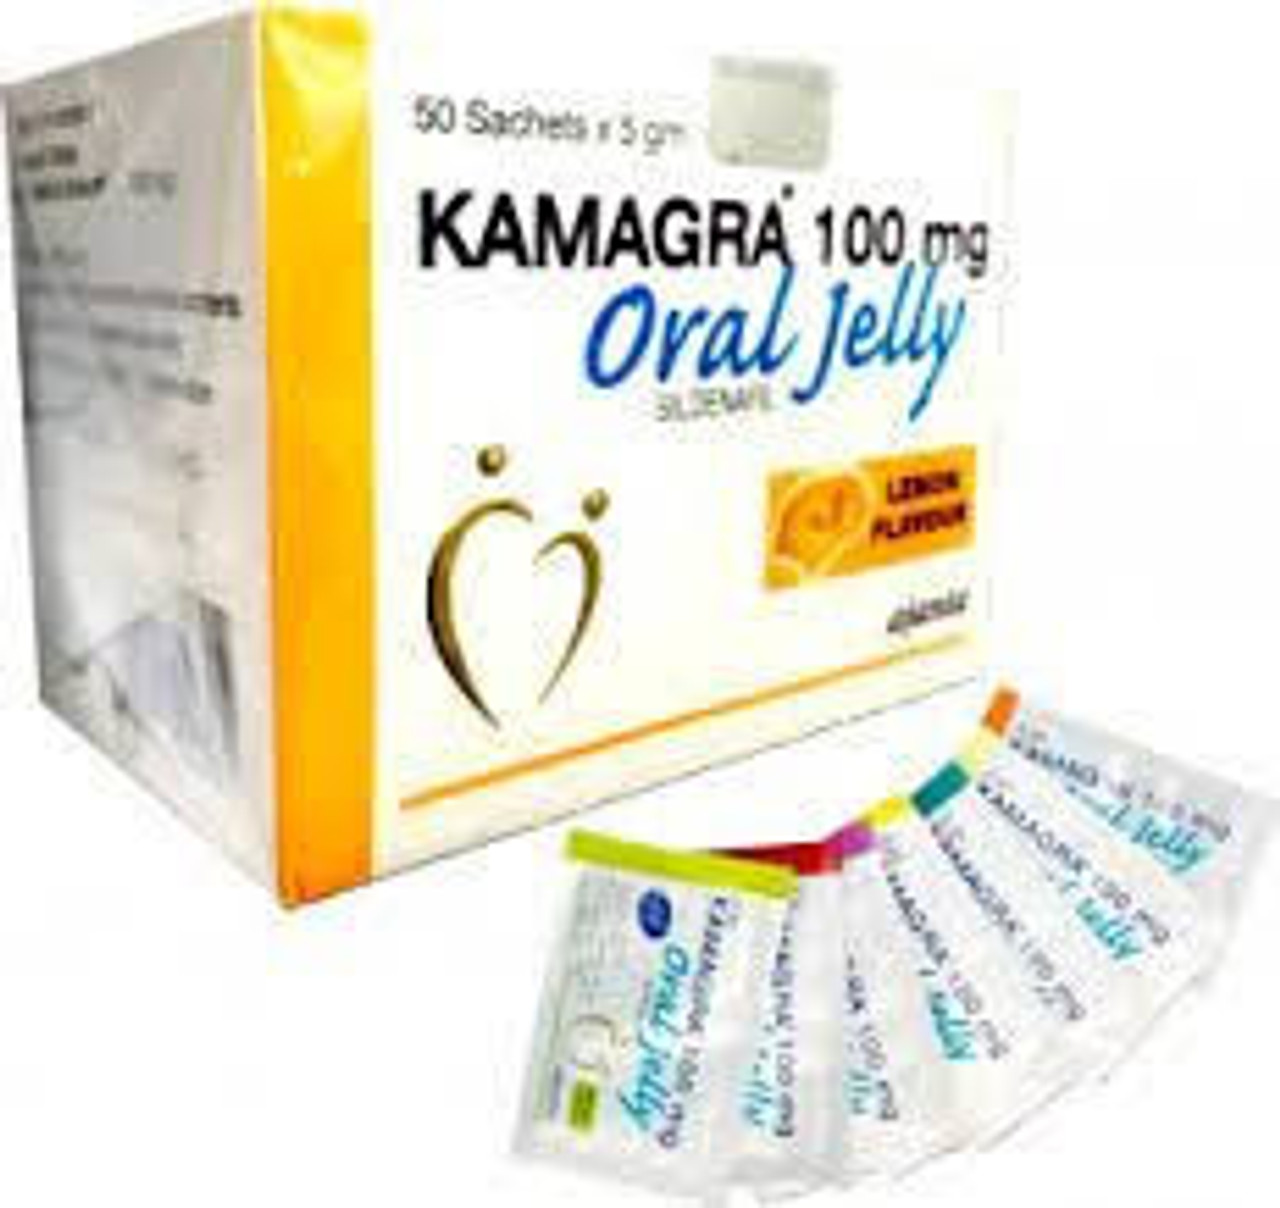 Kamagra Oral Jelly Sildenafil 100mg (2Week Pack x 7 ) 14 + 2 Gratis 16pcs -  N.Y.C.D. STUDIOS ENTERPRISES Since 1996